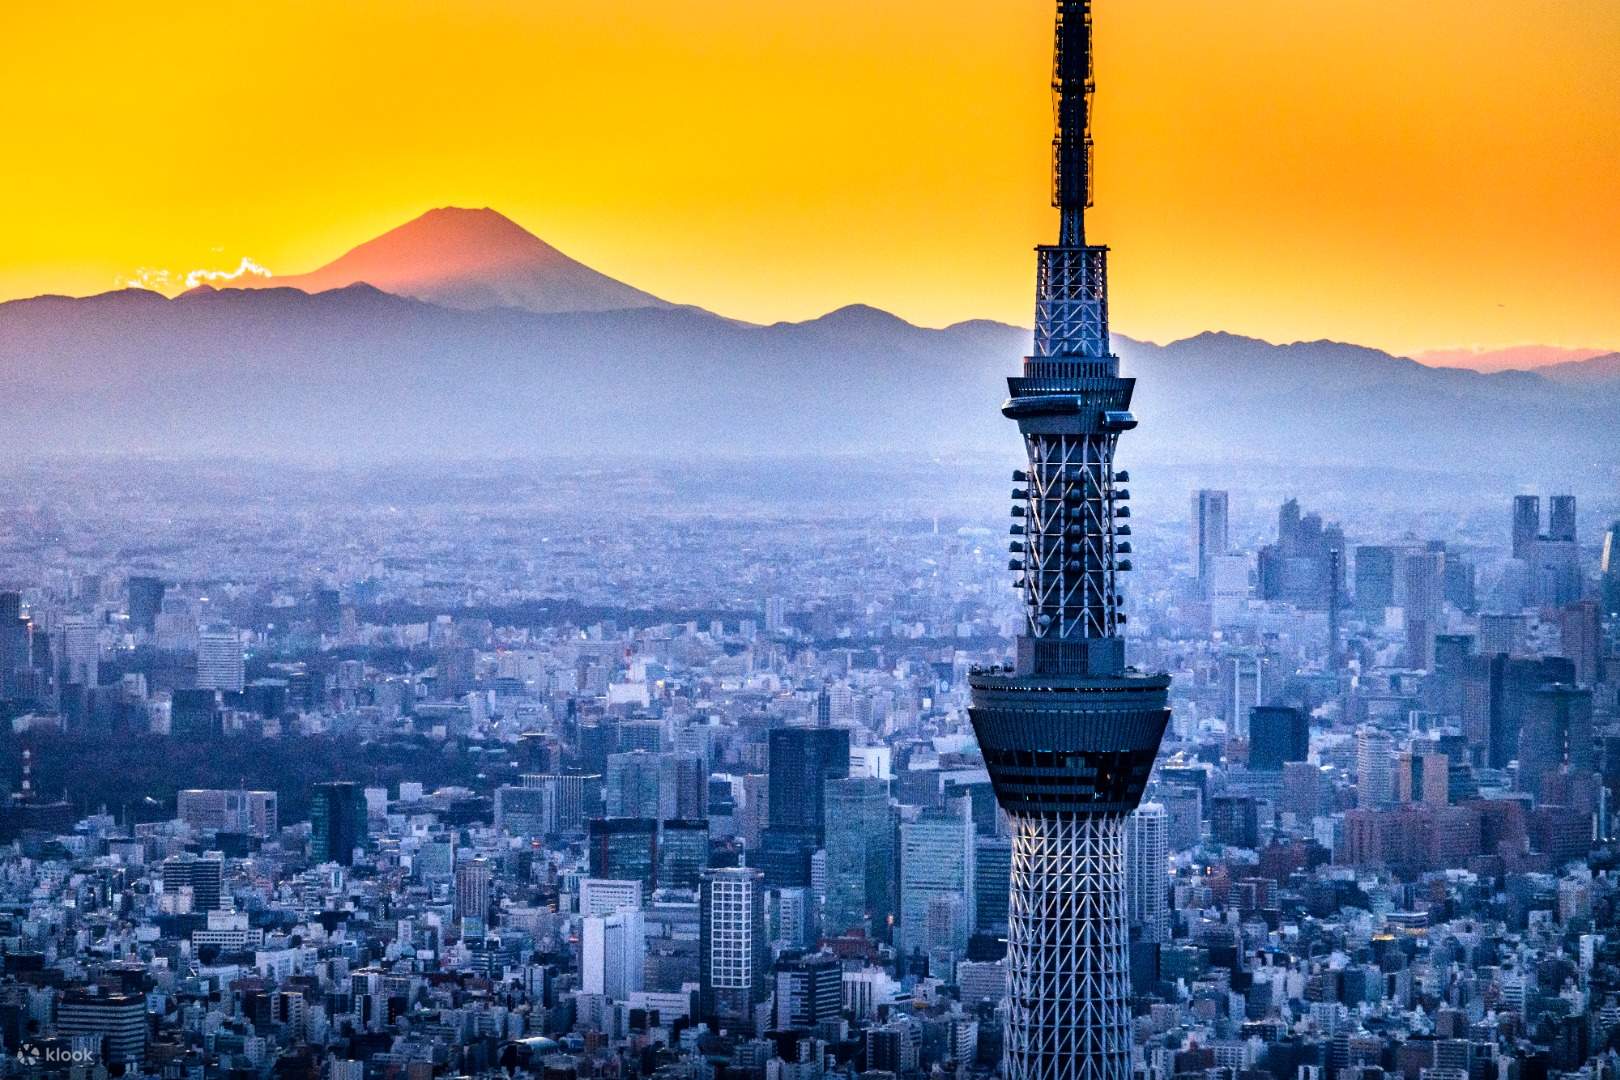 tháp chọc trời tokyo Tokyo skytree và cây cầu vào lúc hoàng hôn Nhật Bảnmàn trập  Tokyo skytree và cây cầu vào lúc hoàng hôn Nhật Bản   Tokyo Skytree là tháp quan sát và phát sóng ở thành phố Sumida, Tokyo, Nhật Bản. Đây là cấu trúc cao nhất ở Nhật Bản, đứng ở độ cao 634 mét và là một trong những tòa tháp cao nhất thế giới. Tòa tháp có hai tầng quan sát chính, Tembo Deck ở độ cao 350 mét và Tembo Galleria ở độ cao 450 mét, mang đến cho du khách tầm nhìn toàn cảnh Tokyo và các khu vực xung quanh.  Tòa tháp cũng có nhiều nhà hàng, cửa hàng và cơ sở giải trí, bao gồm cả cung thiên văn và sàn kính khiến nó trở thành điểm du lịch nổi tiếng trong nước và là biểu tượng của sức mạnh công nghệ và hiện đại hóa của Nhật Bản. Ngày nay, nó là một trong những điểm thu hút hàng đầu ở Tokyo để ghé thăm.